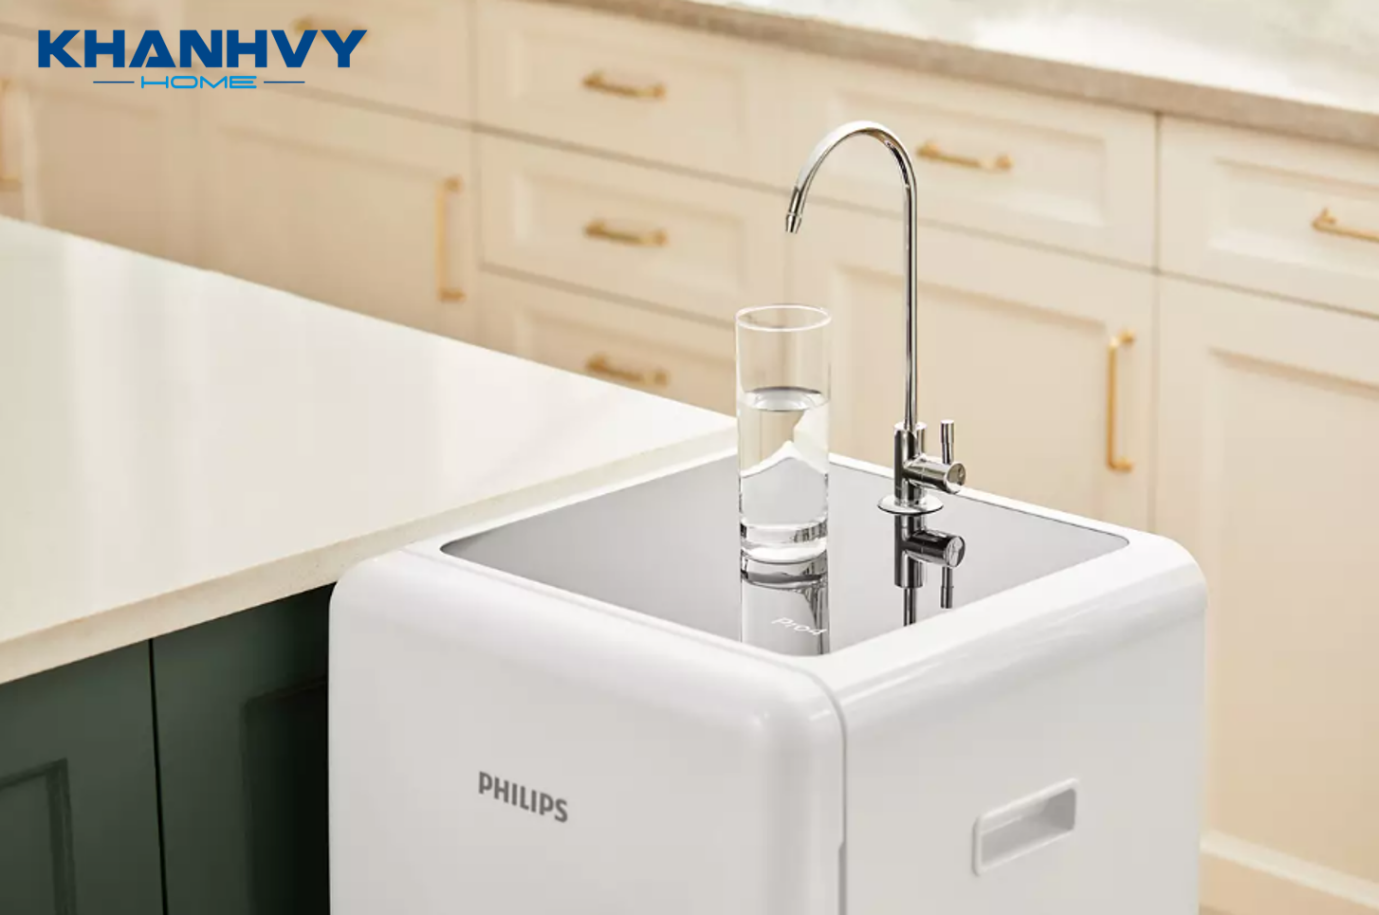 Máy lọc nước Philips RO Thế Hệ Mới ADD8970 có công suất lọc 15.7 lít/giờ và dung tích bình chứa nước 10 lít, cung cấp nước sạch dùng cho cả gia đình